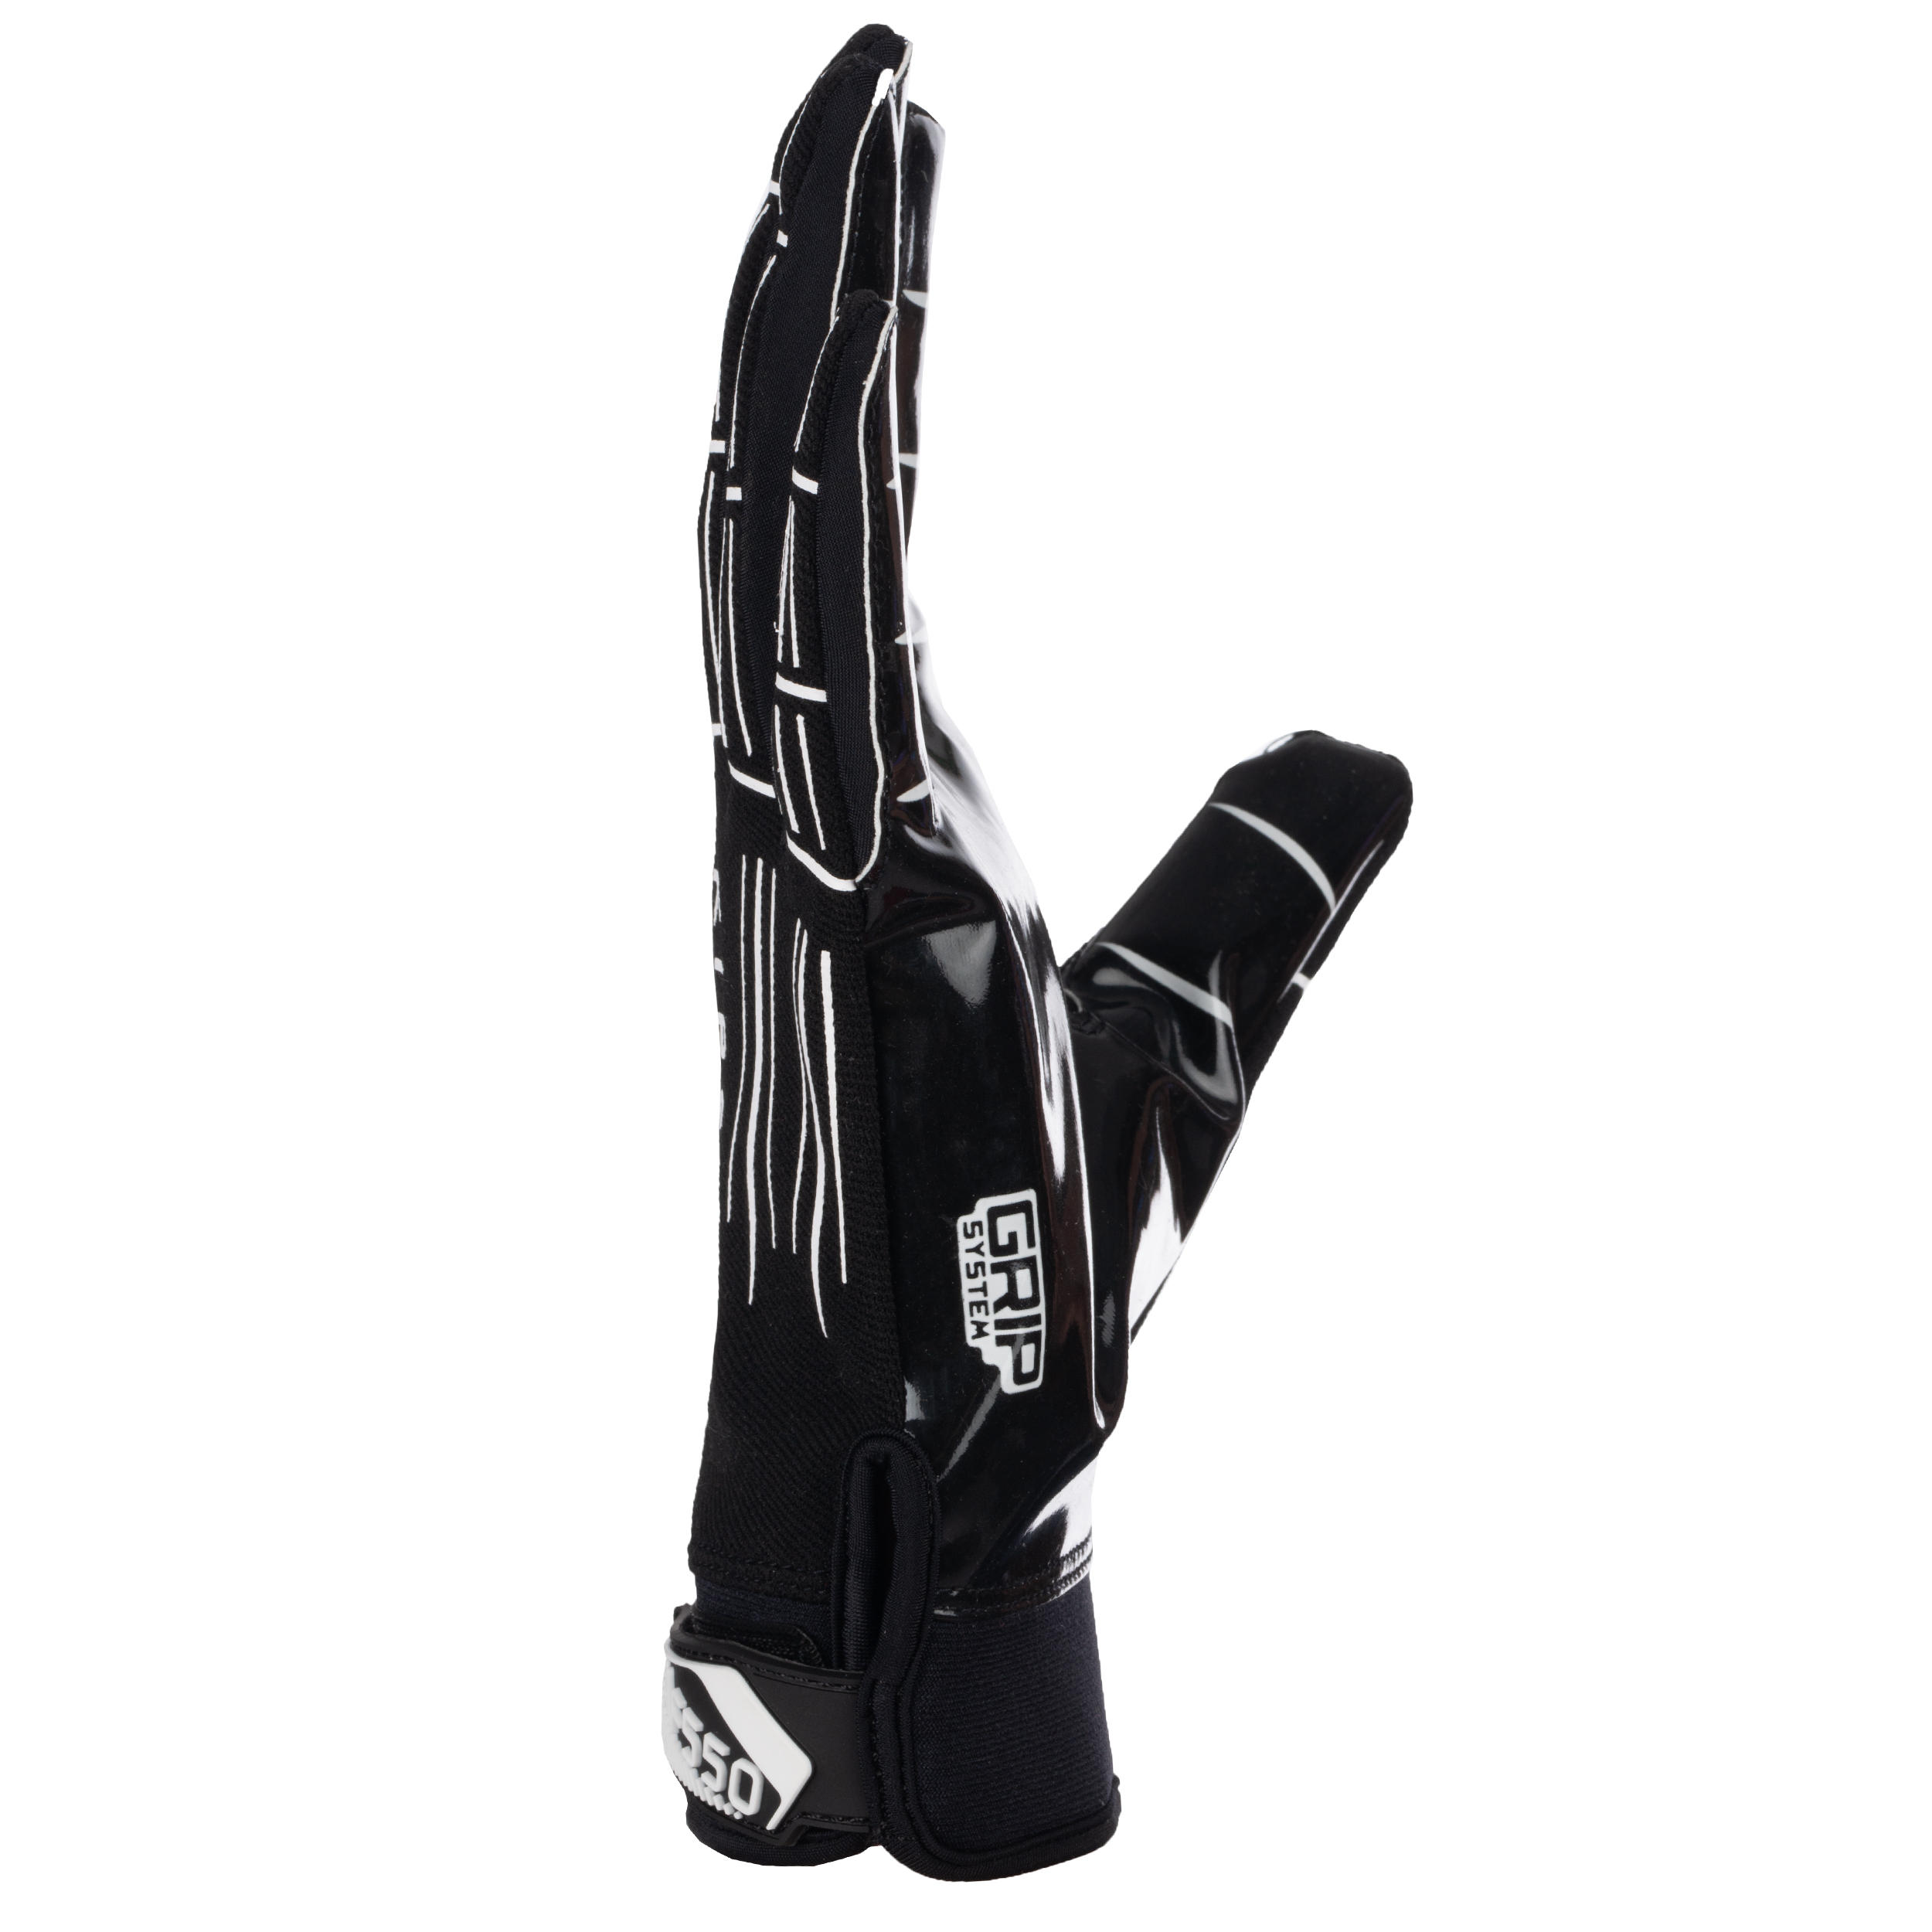 Football Gloves - 550 GR Black - KIPSTA